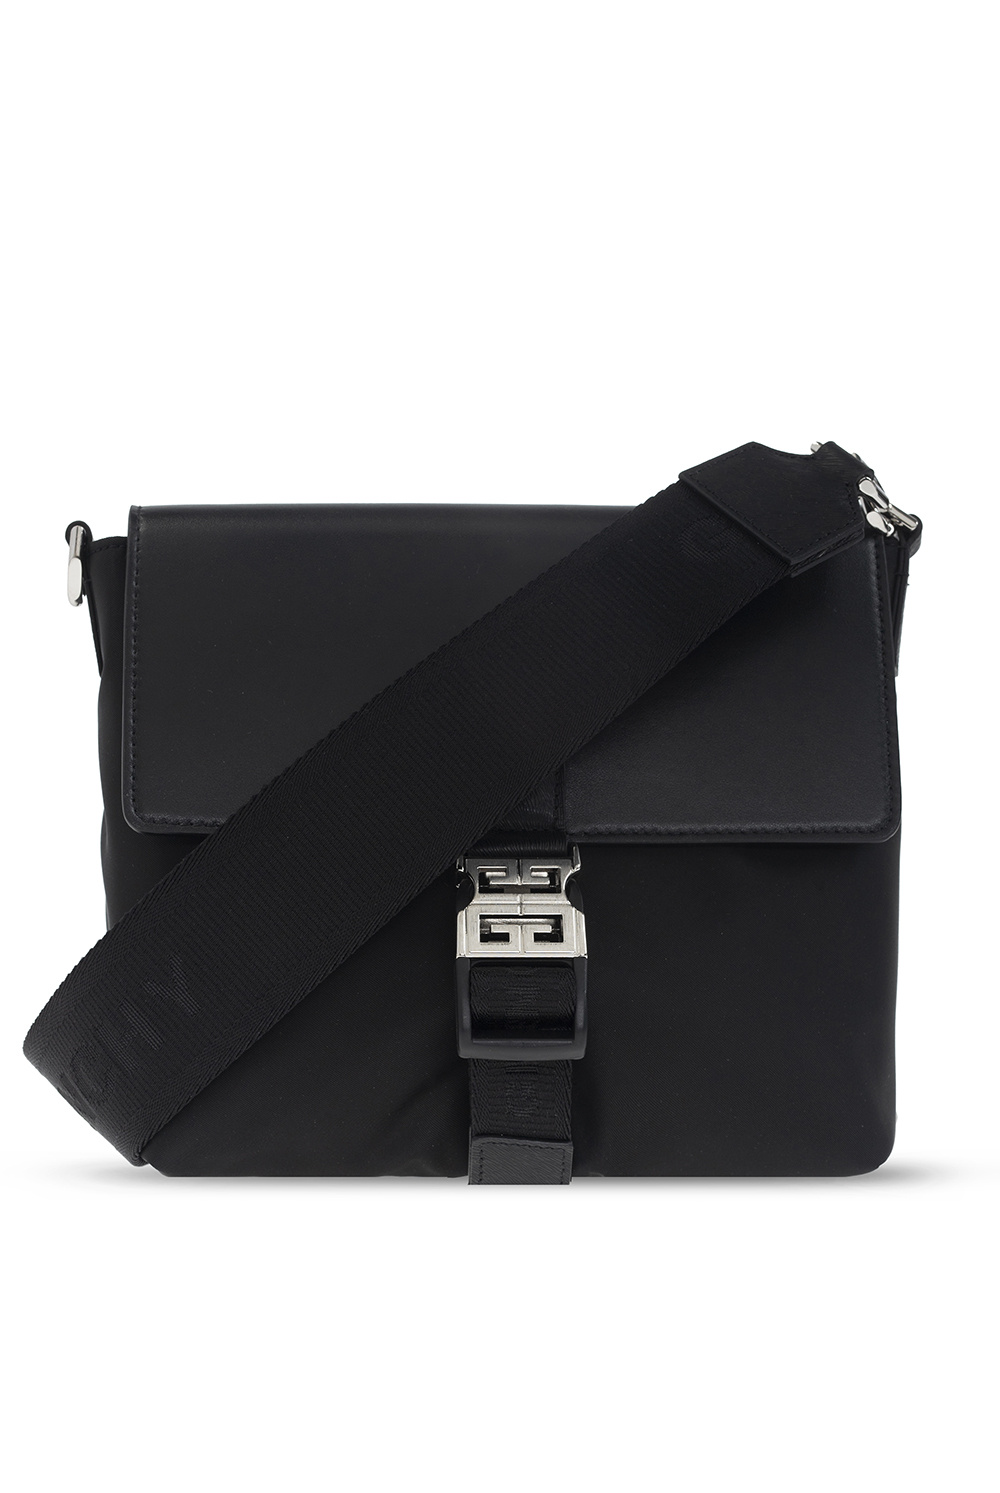 Givenchy ‘Messenger S’ shoulder bag